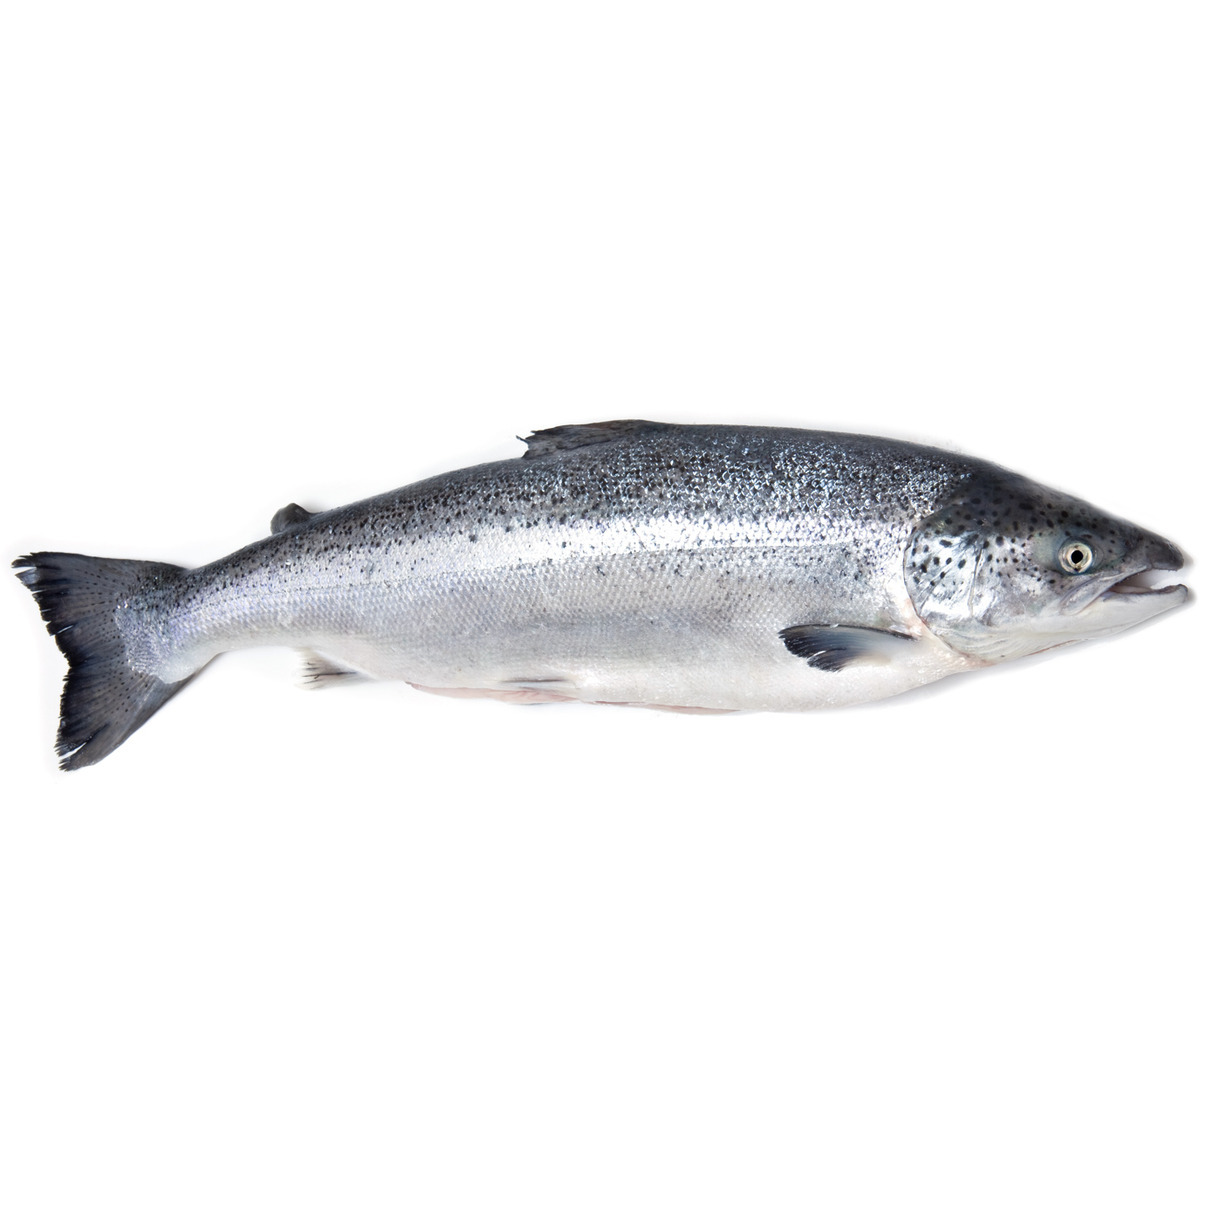 Океаническая форель вылов Норвегия
Высококачественная рыба, доступная в целом виде и замороженная для сохранения свежести. Каждая рыба имеет вес примерно от 5 до 6 килограммов, что делает ее идеальным выбором для приготовления вкусных и диетически полезных блюд.

Атлантическая Форель обладает нежным и сочным мясом с легким и нежным вкусом, который подвергается множеству кулинарных приемов. При заказе форели, вам предоставляется возможность выбрать между целой рыбой или нарезанными стейками. Нарезанная рыба поставляется с головой и суповым набором, что позволяет вам полностью насладиться всеми ее преимуществами и использовать ее в различных рецептах. Из головы Вы можете сделать идеальный бульон для супов и соусов, а стейки готовить любымым вам способом.
Форель заморожена для сохранения свежести и качества продукта. Чтобы сохранить все вкусовые качества и питательные свойства, мы рекомендуем хранить ее в морозильной камере.
Океаническая форель вылова Норвегии - это идеальный выбор для тех, кто ищет высококачественную рыбу с нежным мясом и вкусом. Она подойдет как для повседневных блюд, так и для особых мероприятий. Приготовьте вкусные блюда с форелью и порадуйте себя и своих гостей неповторимыми вкусовыми впечатлениями.
В продаже целая рыба весом 7 - 8 килограмм.